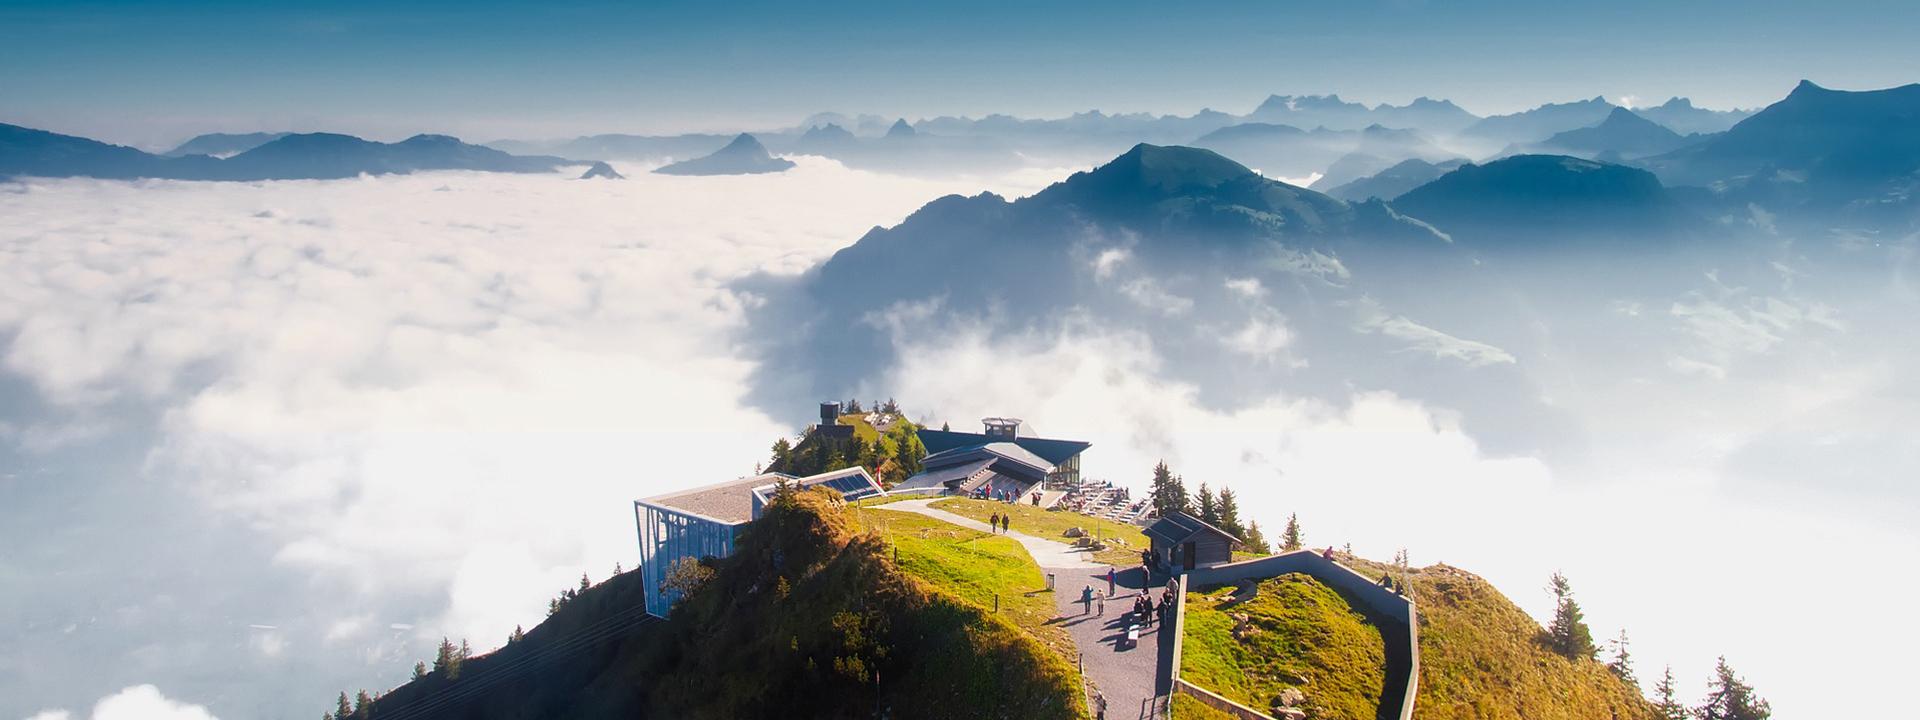 Stanserhorn über den Wolken Schweiz